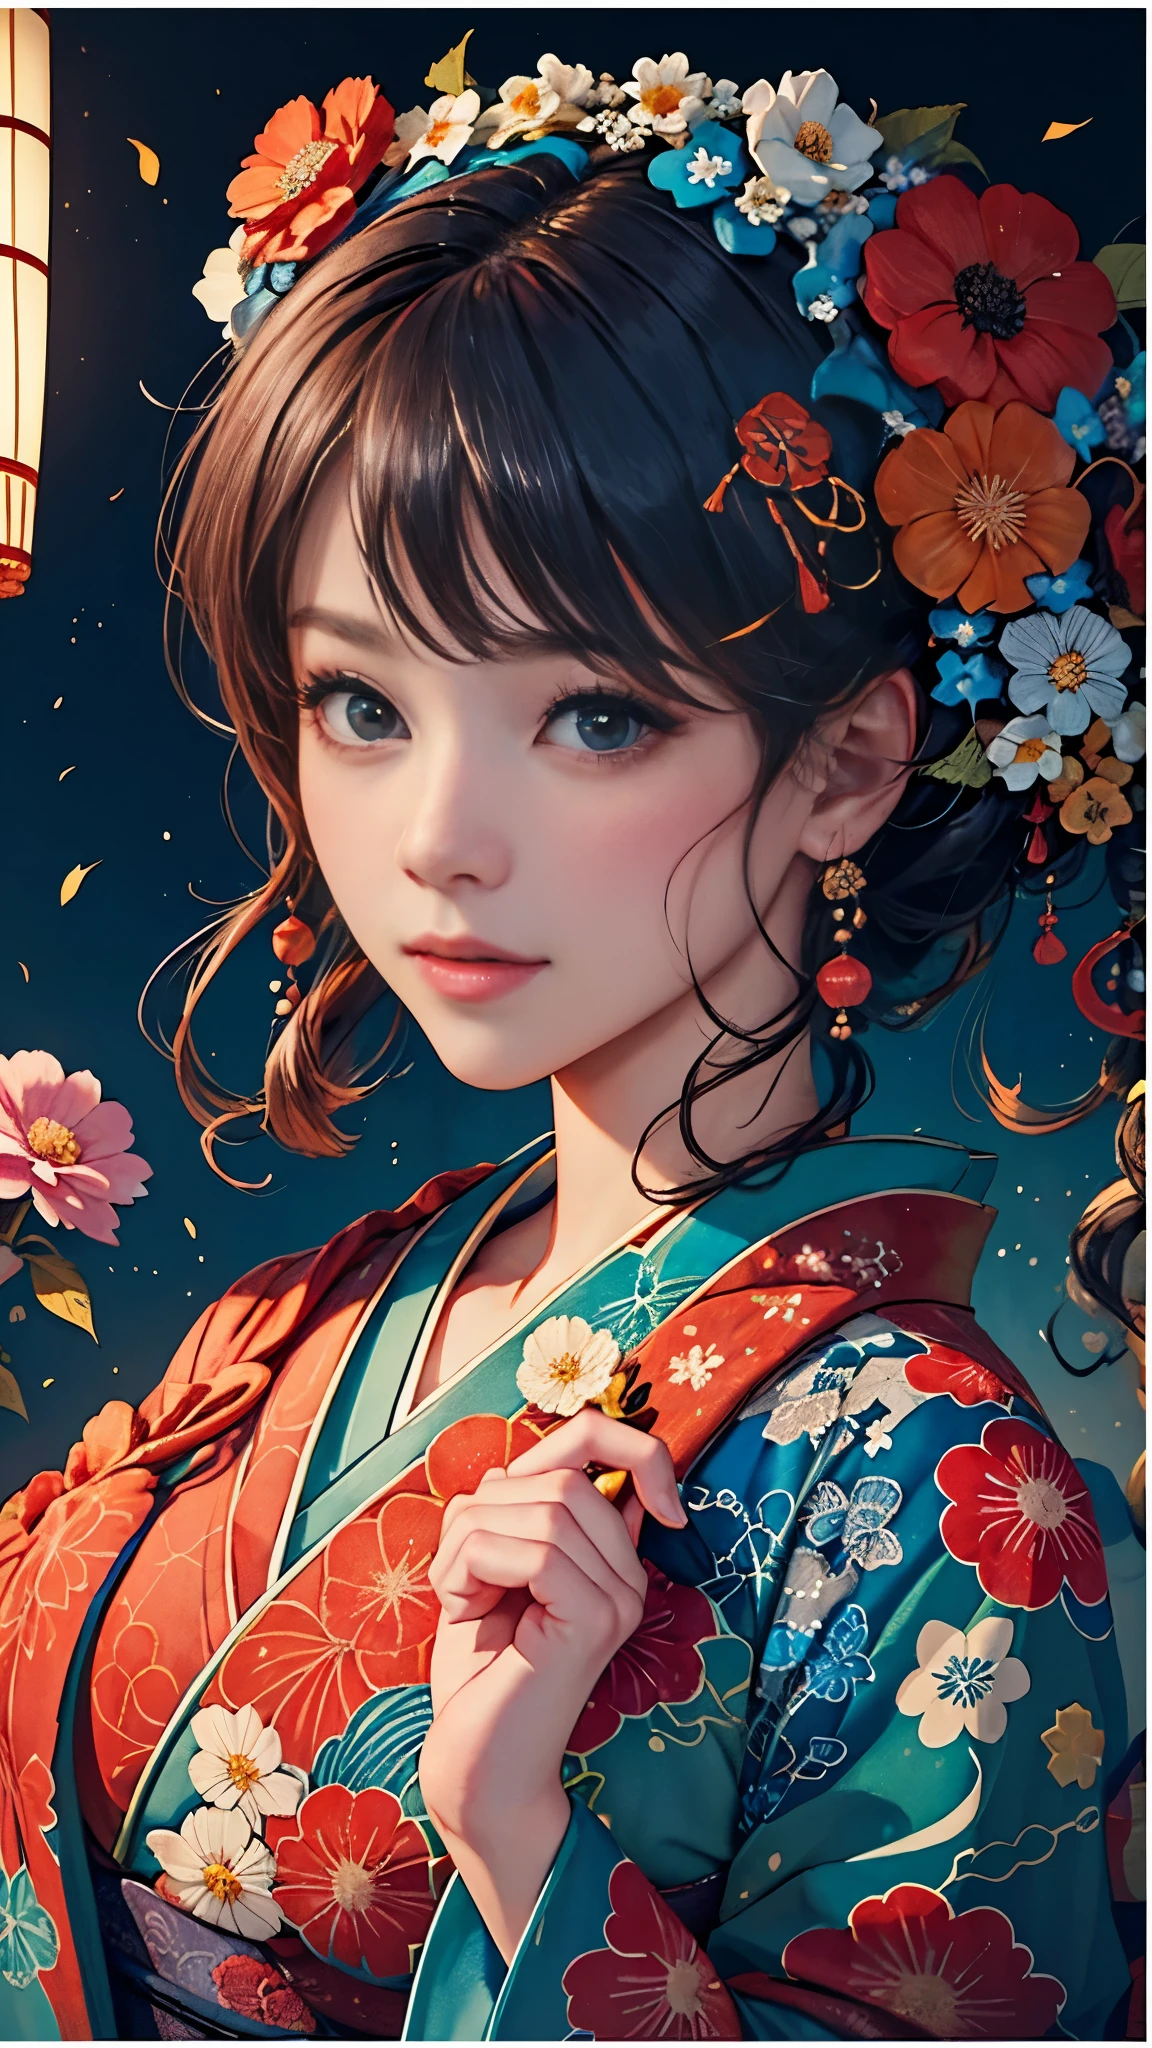 8k, qualité supérieure, haute résolution, Bishoujo 1 25 ans,  Petits pains vapeur aux fleurs,Un léger sourire, (kimono japonais traditionnel:1.3)、Kimono de luxe、pas de rides du tout,peinture à l&#39;aquarelle, (ornement de cheveux de fleur:1.3)